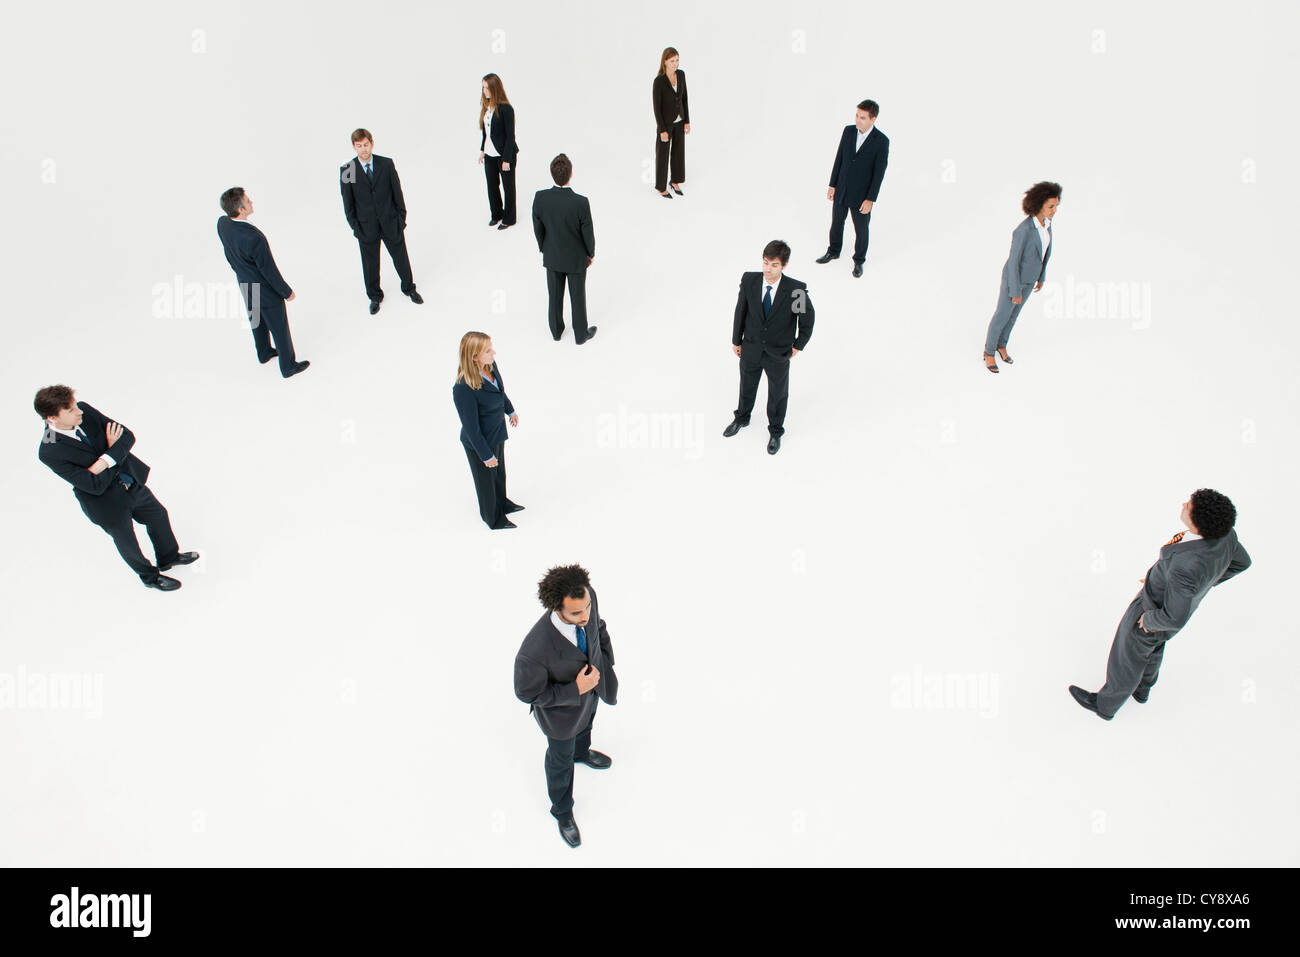 Männer und Frauen, gekleidet in Business-Kleidung Stockfoto